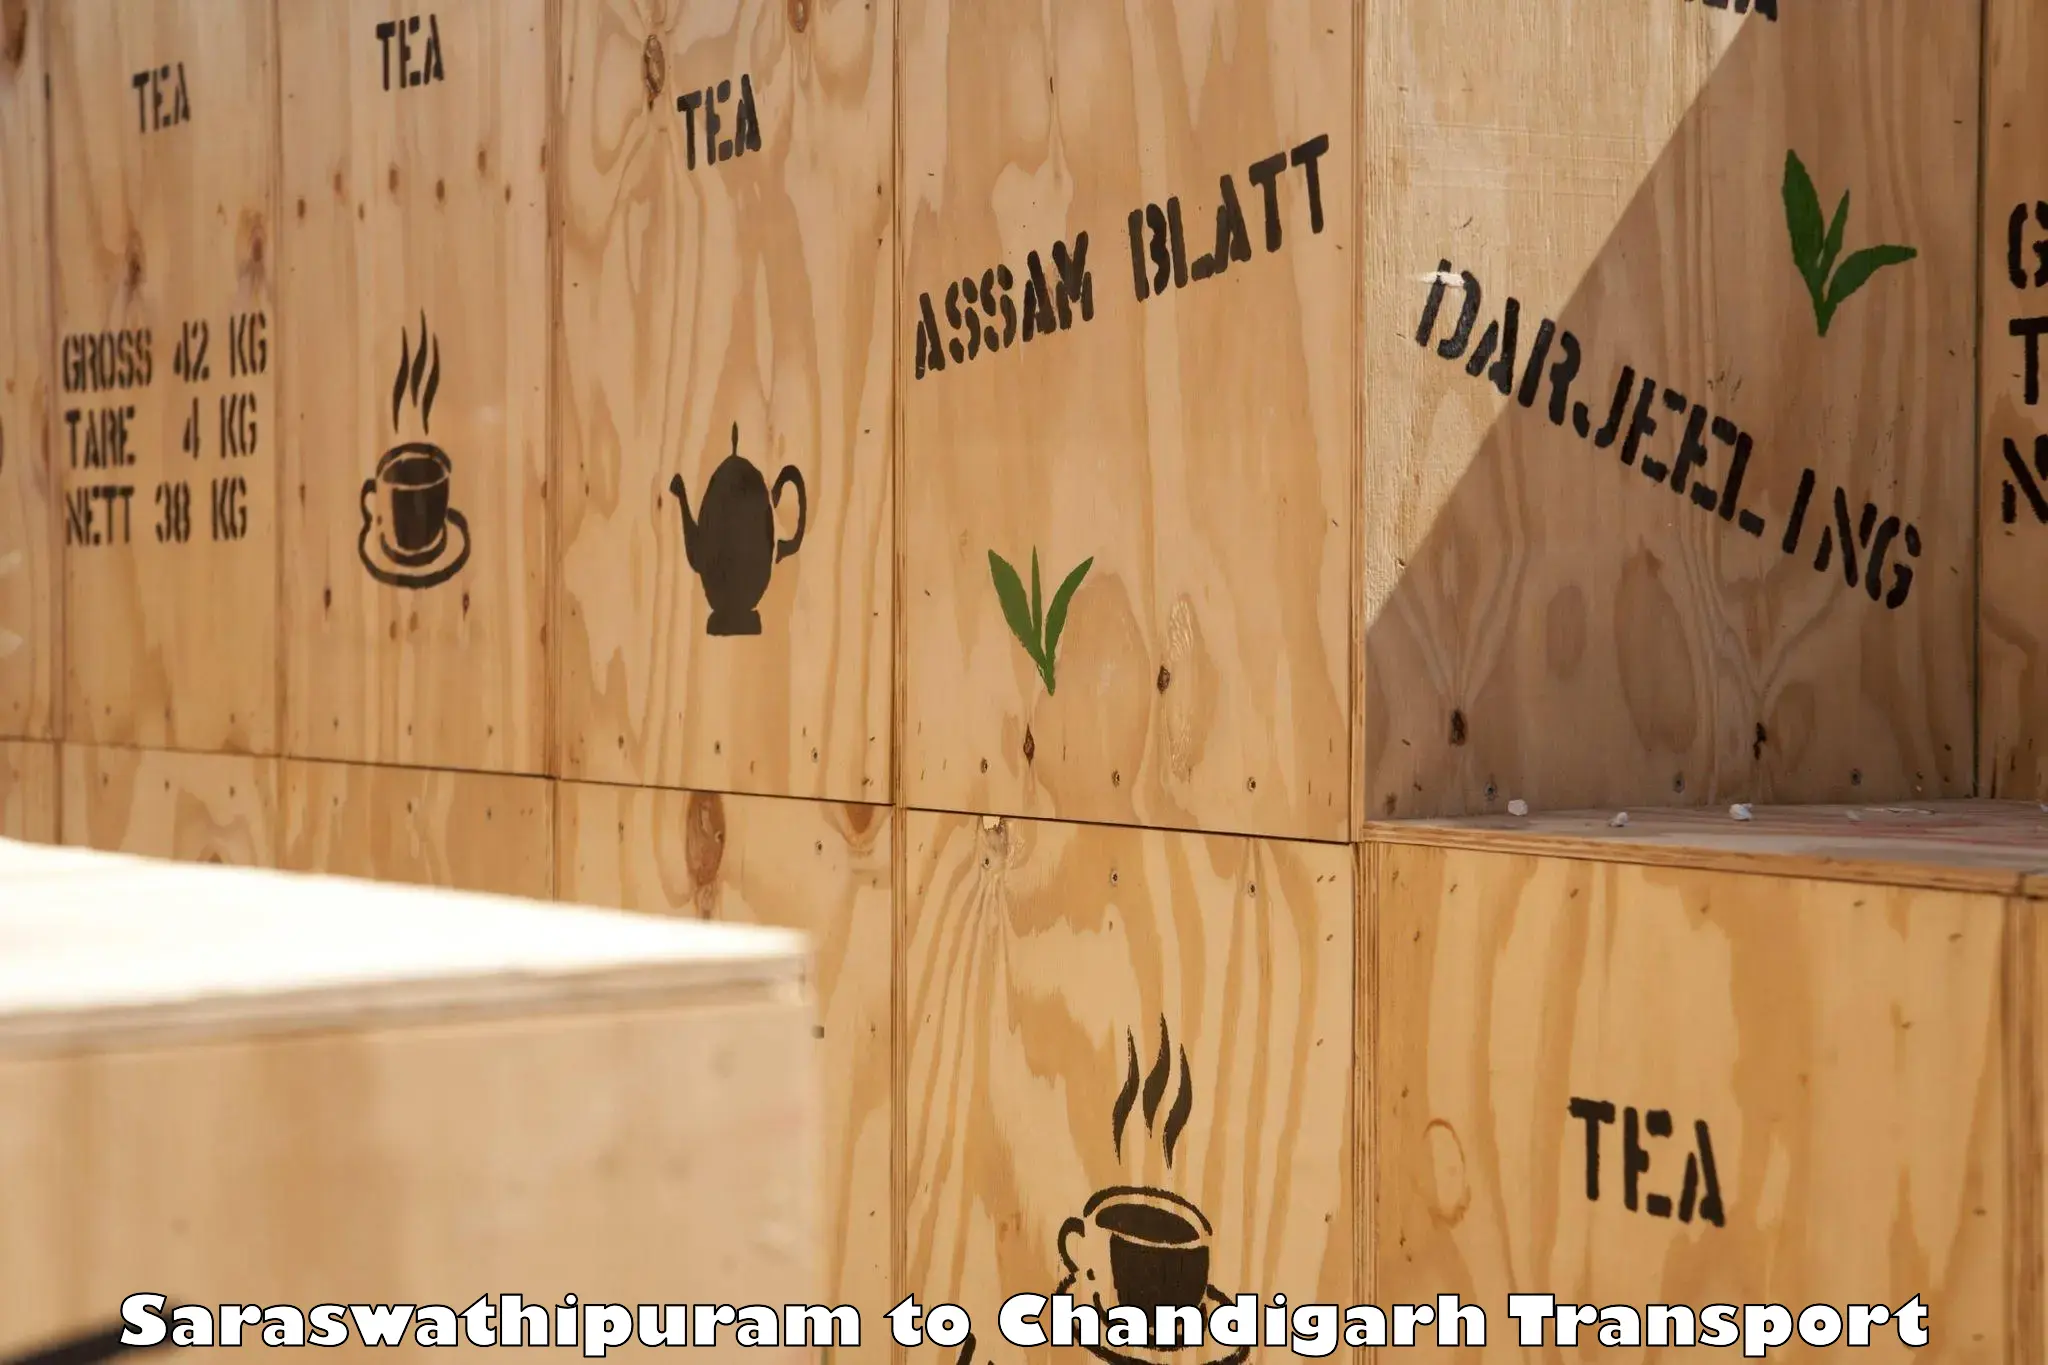 Lorry transport service Saraswathipuram to Chandigarh